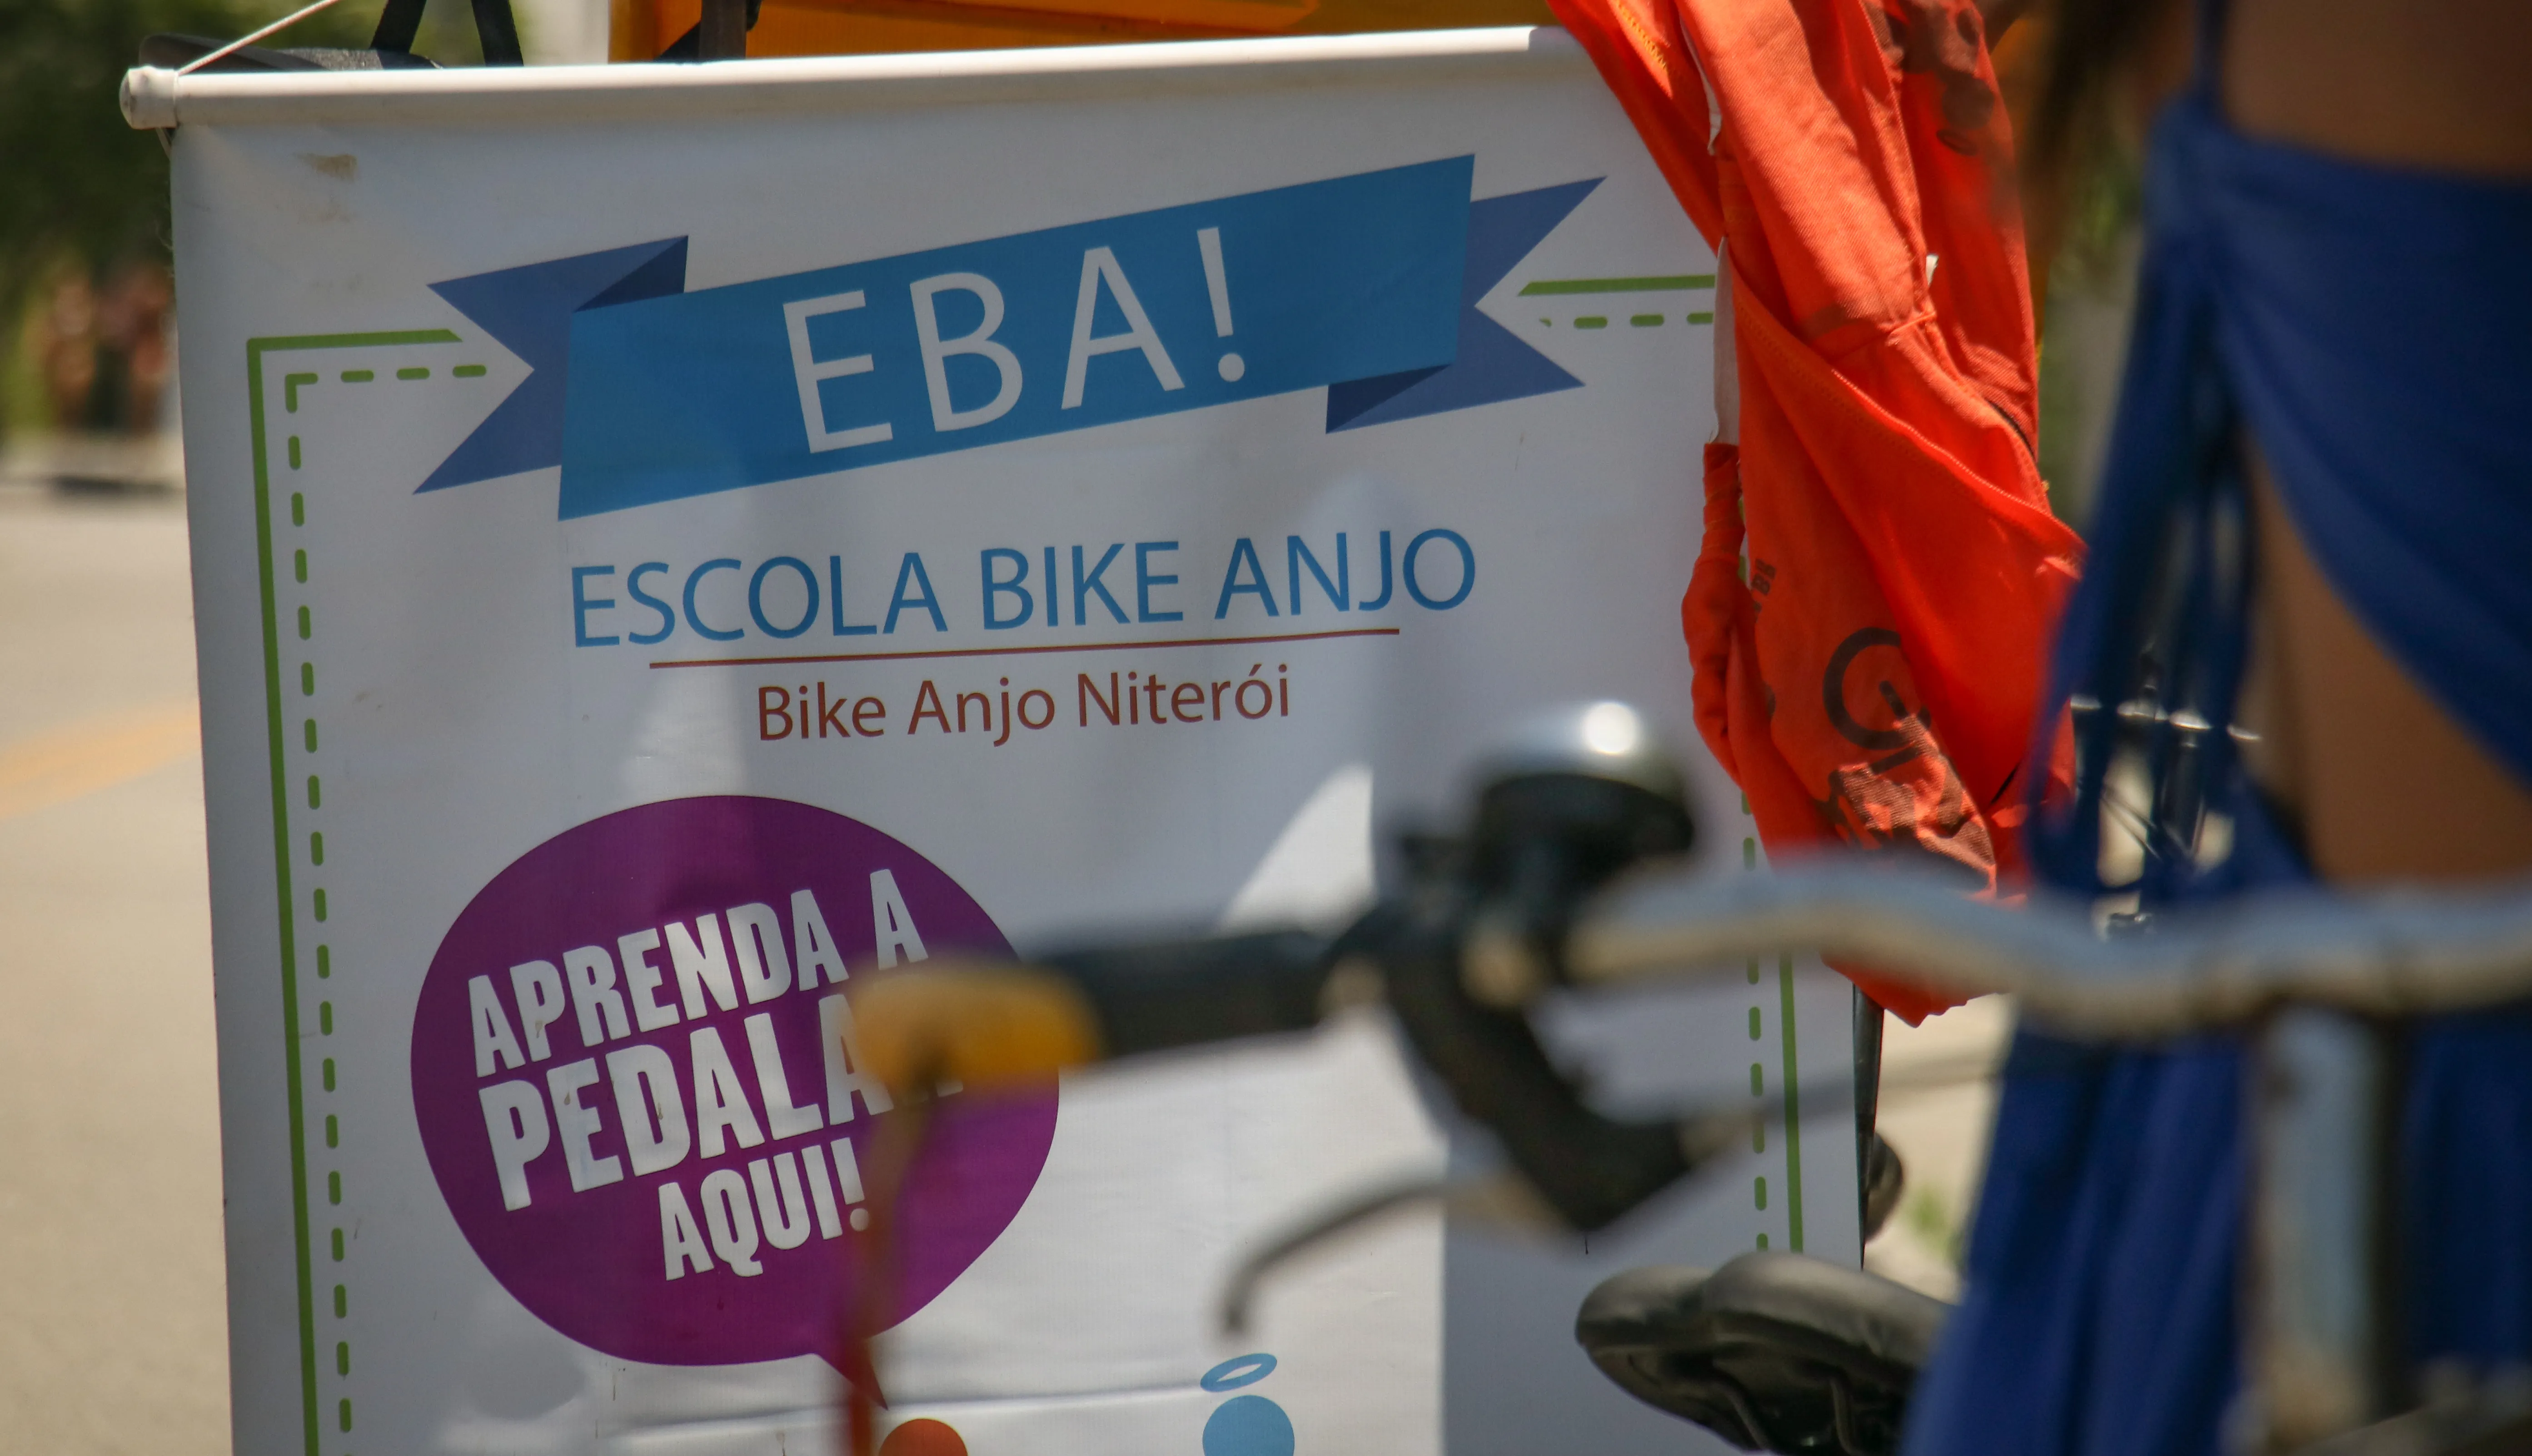 Bike Anjo, ciclistas, bicicleta, Boa Viagem - Karina Cruz